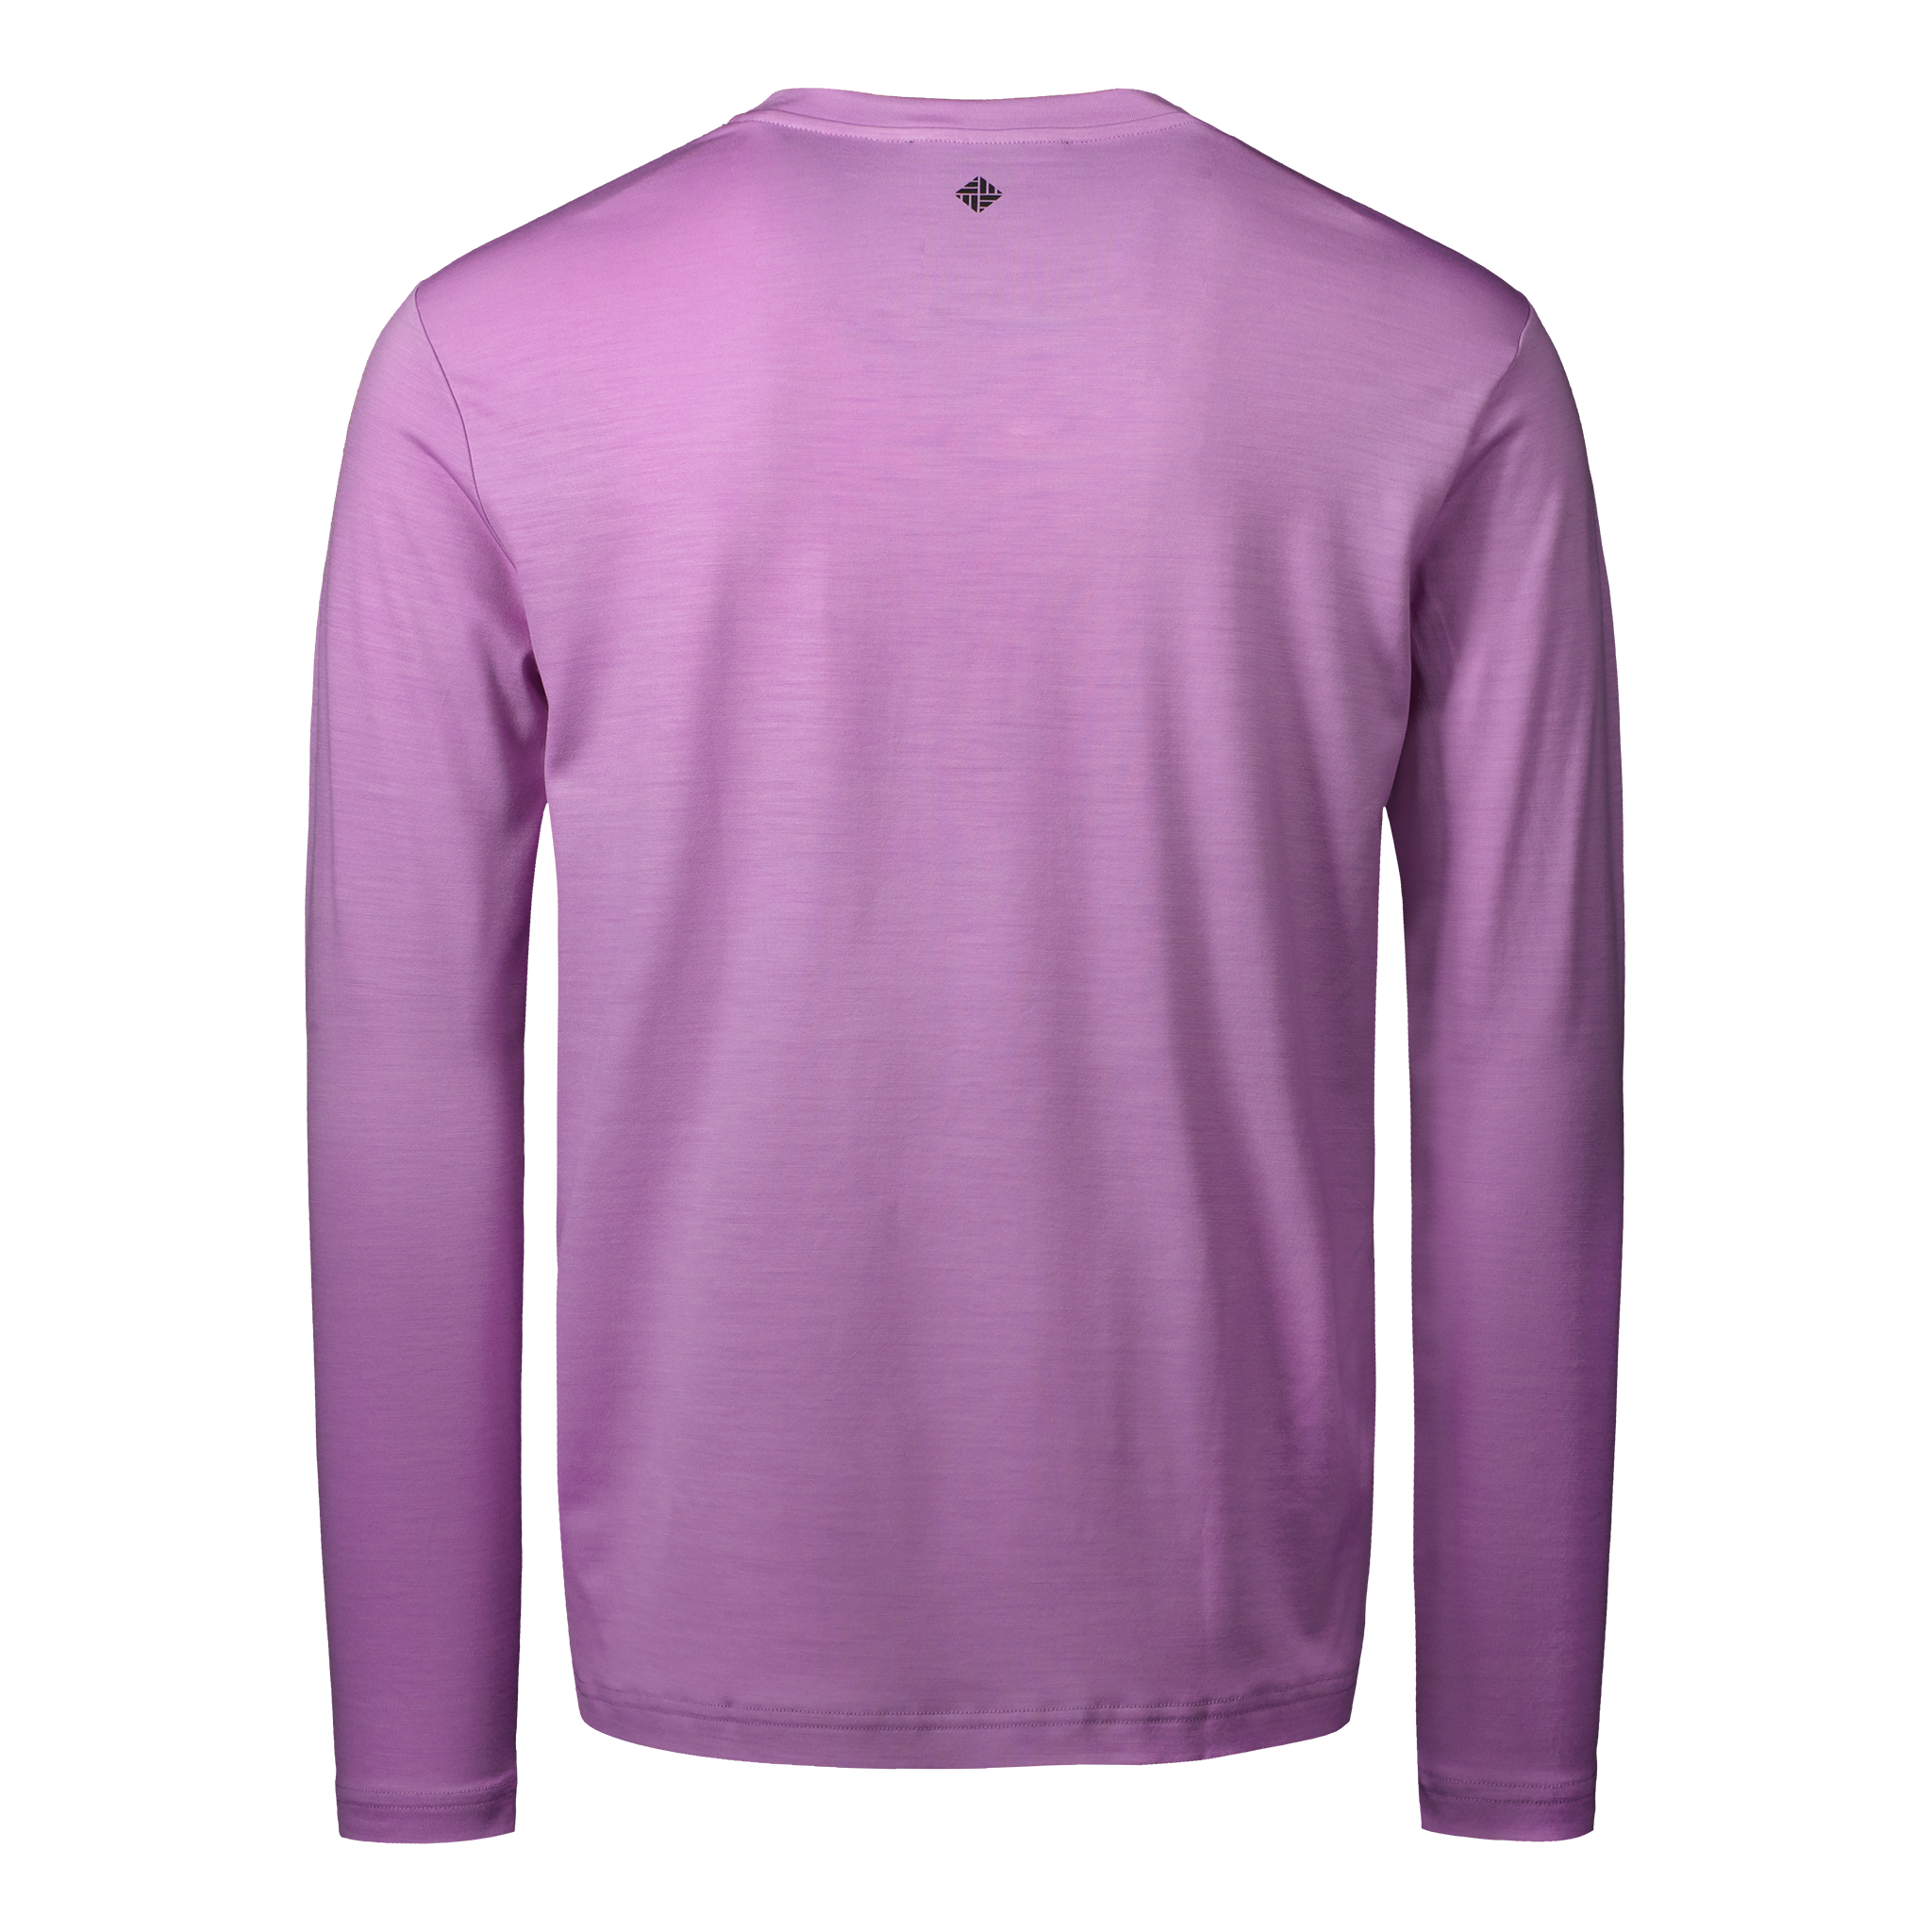 Ultrafine Merino Long Sleeve T-Shirt | Lavender